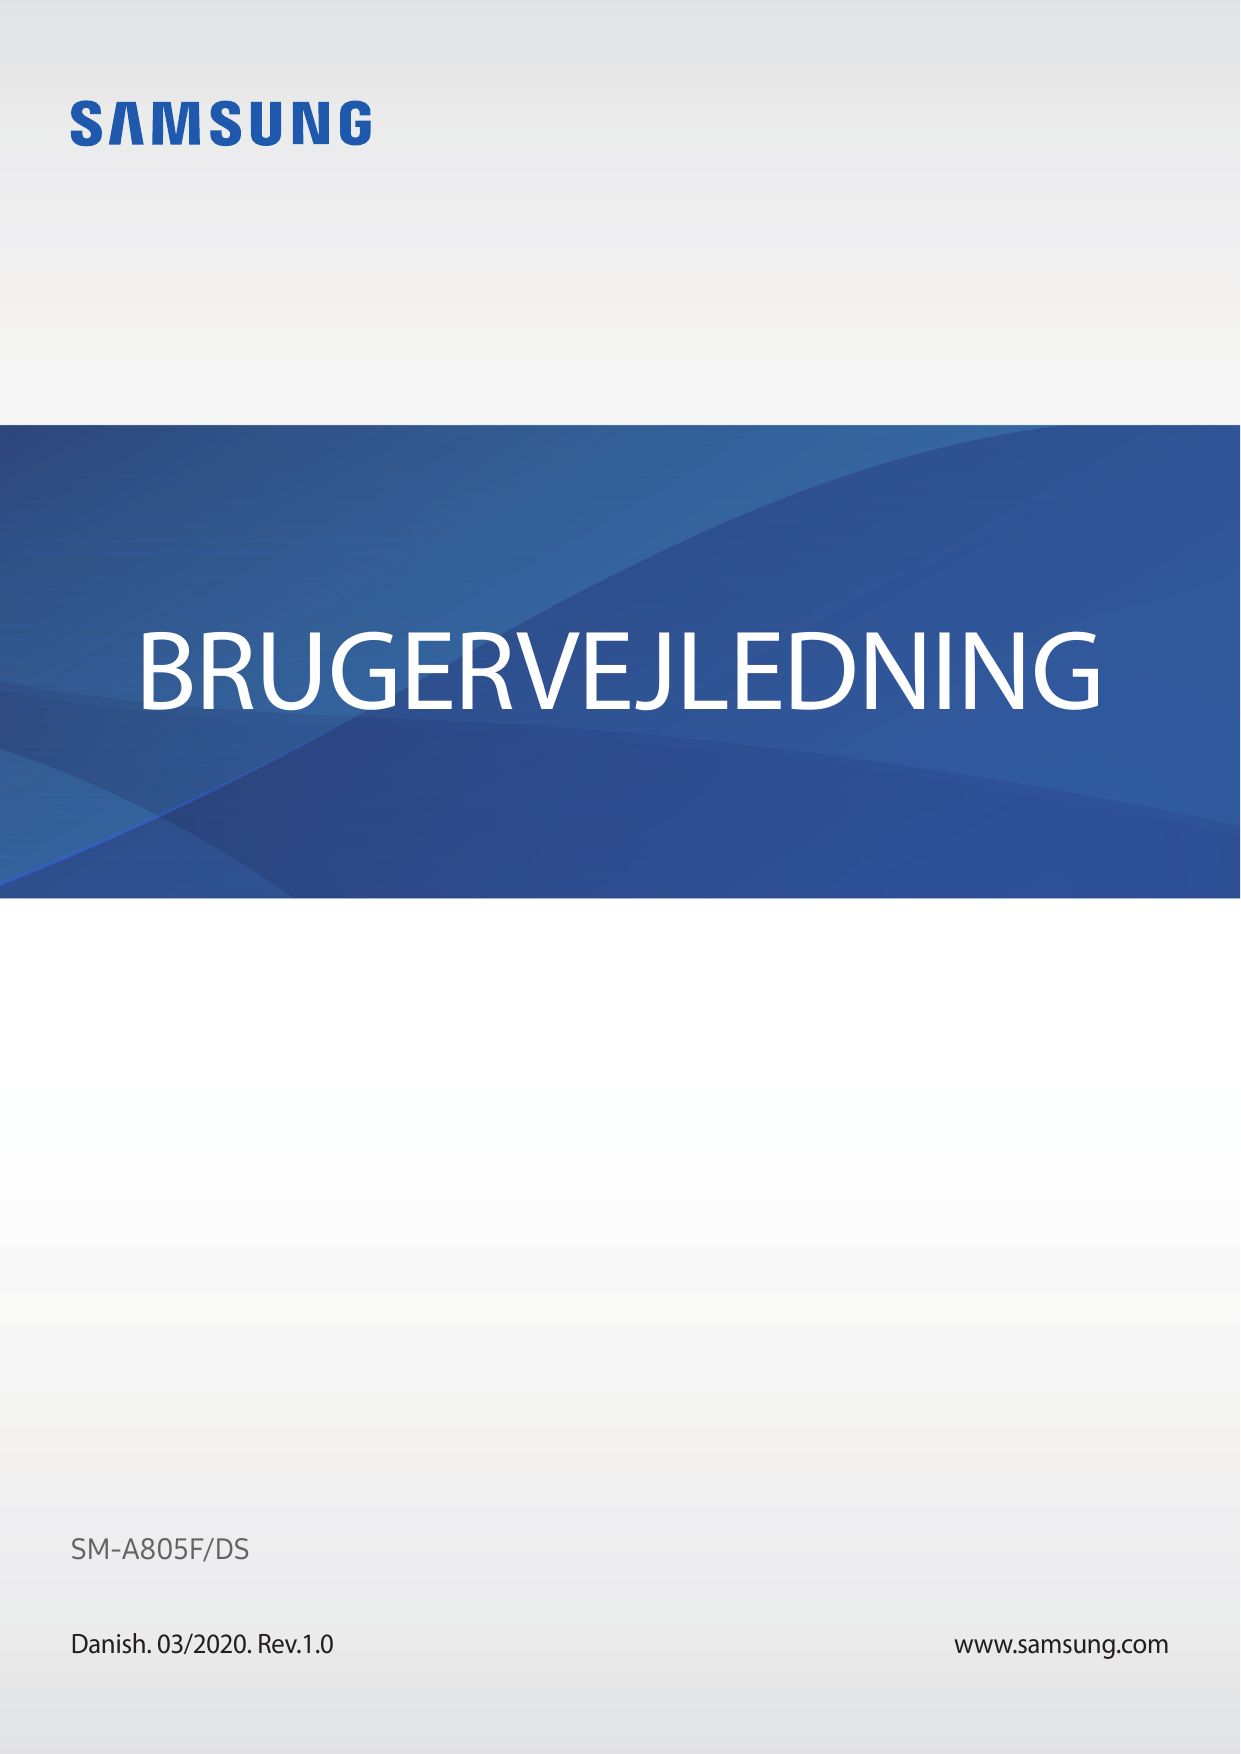 BRUGERVEJLEDNINGSM-A805F/DSDanish. 03/2020. Rev.1.0www.samsung.com